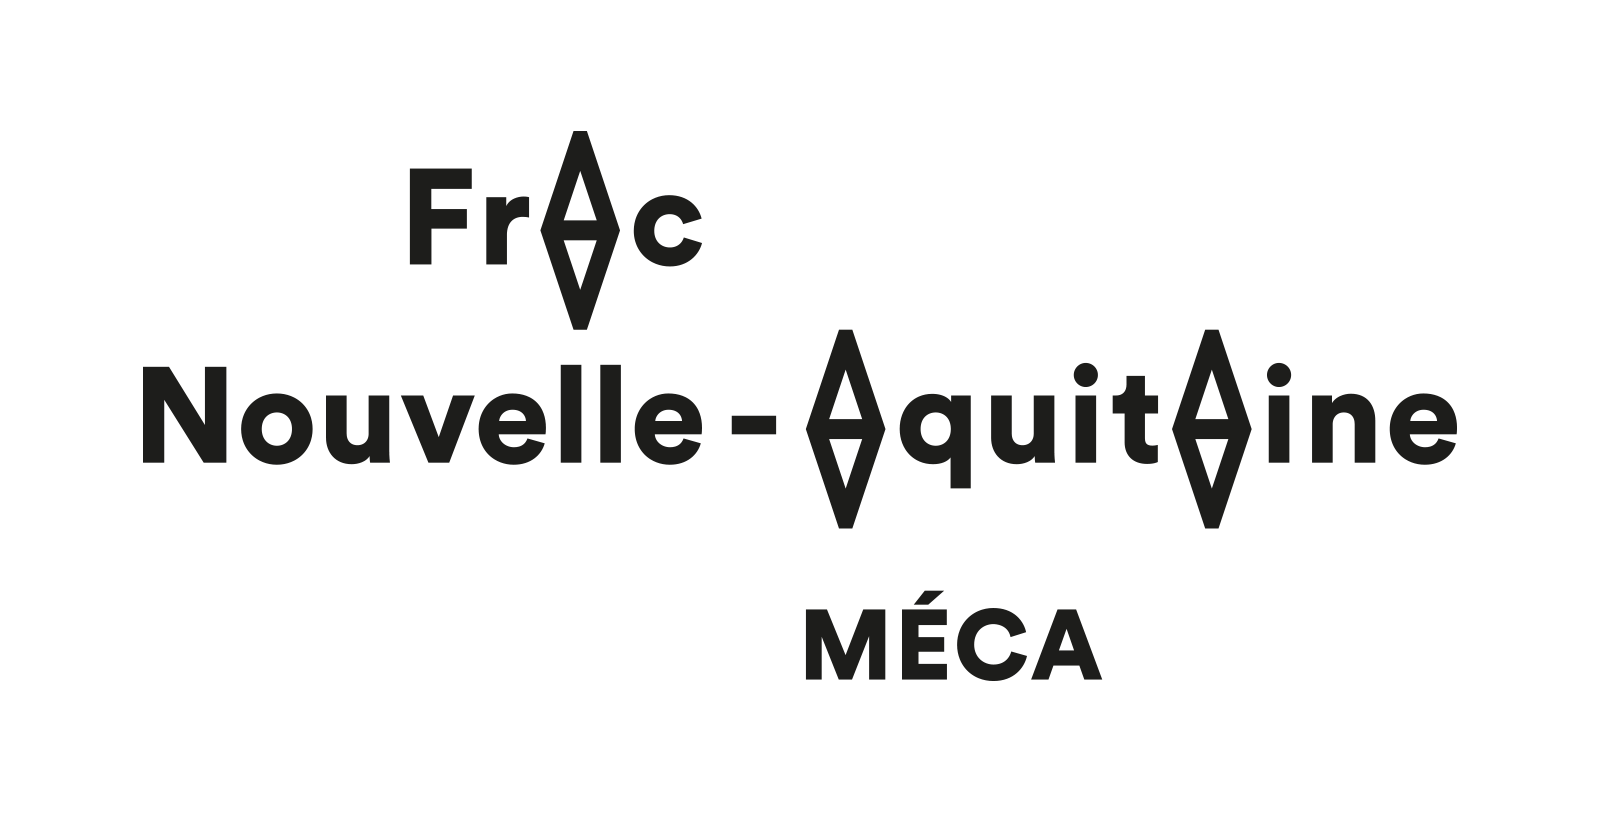 (c) Fracnouvelleaquitaine-meca.fr